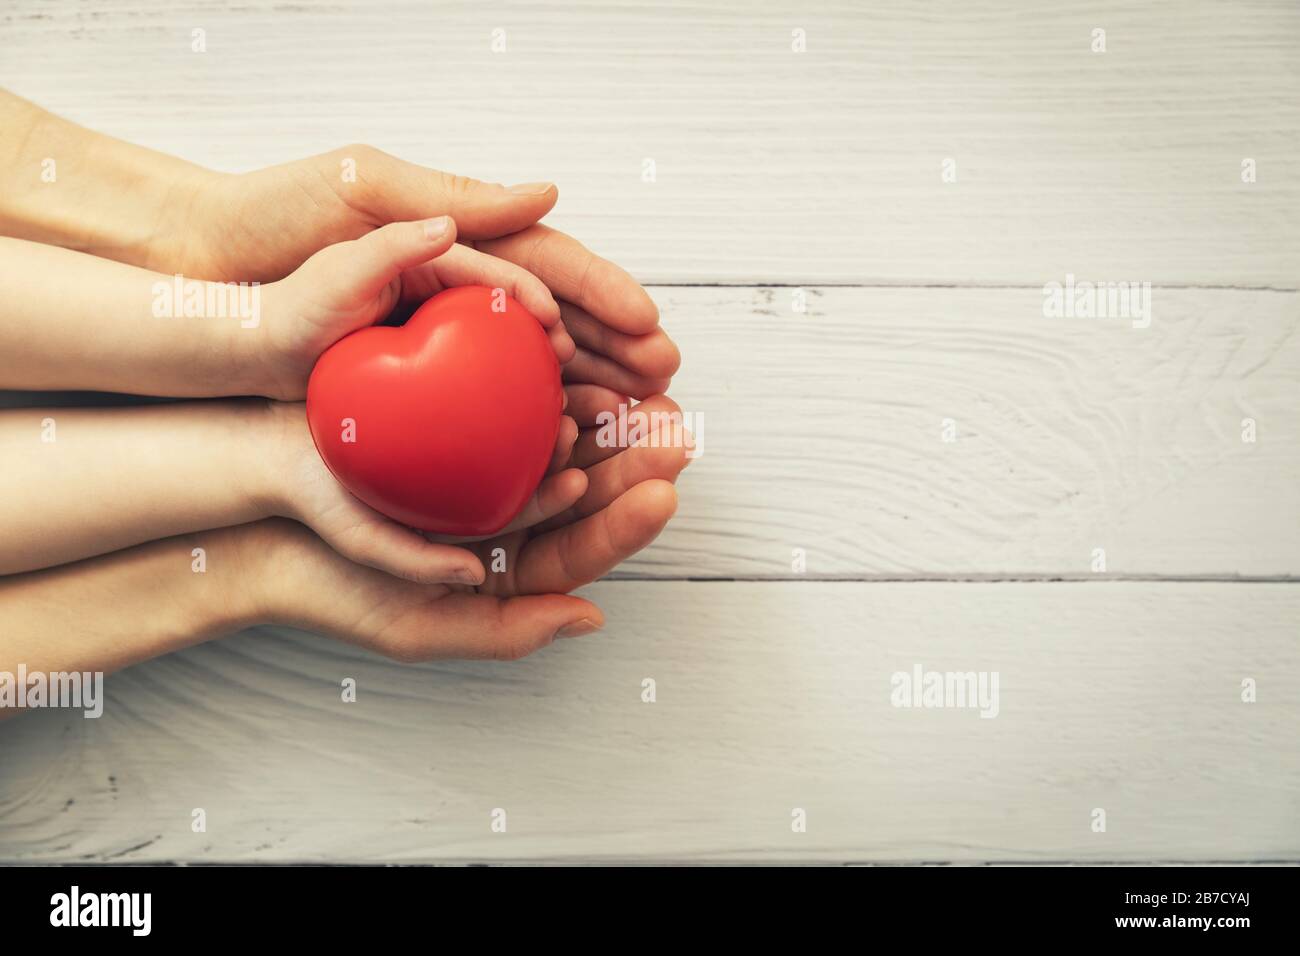 cuore rosso in mano bambino e adulto su sfondo bianco di legno. concetto di salute, donazione di organi, assicurazione famiglia Foto Stock